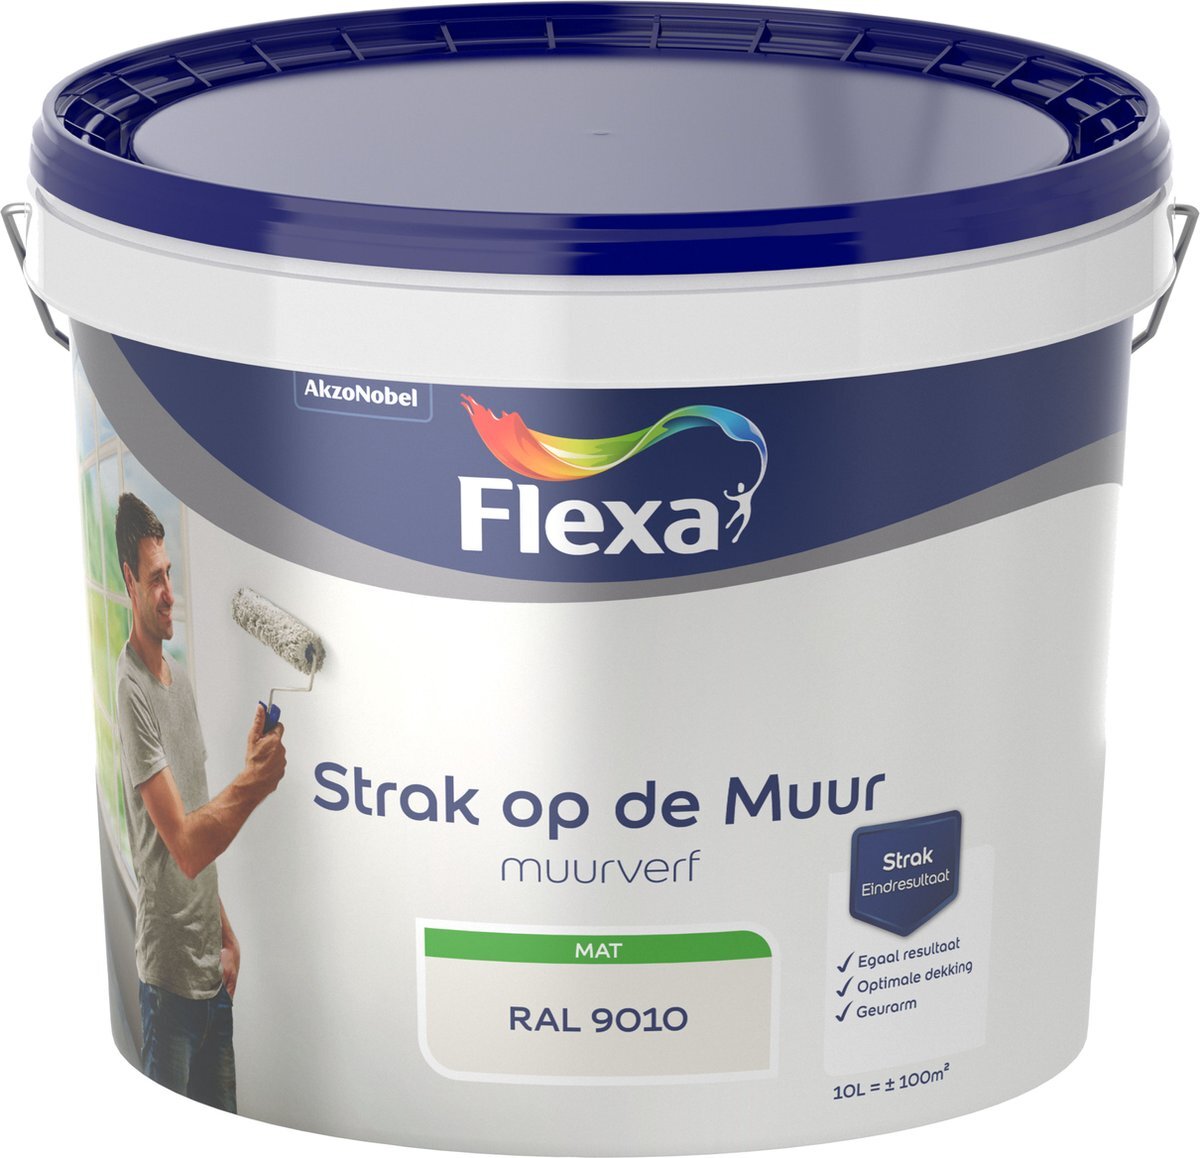 FLEXA Strak op de Muur Muurverf - Mat - RAL 9010 / gebroken wit - 10 liter